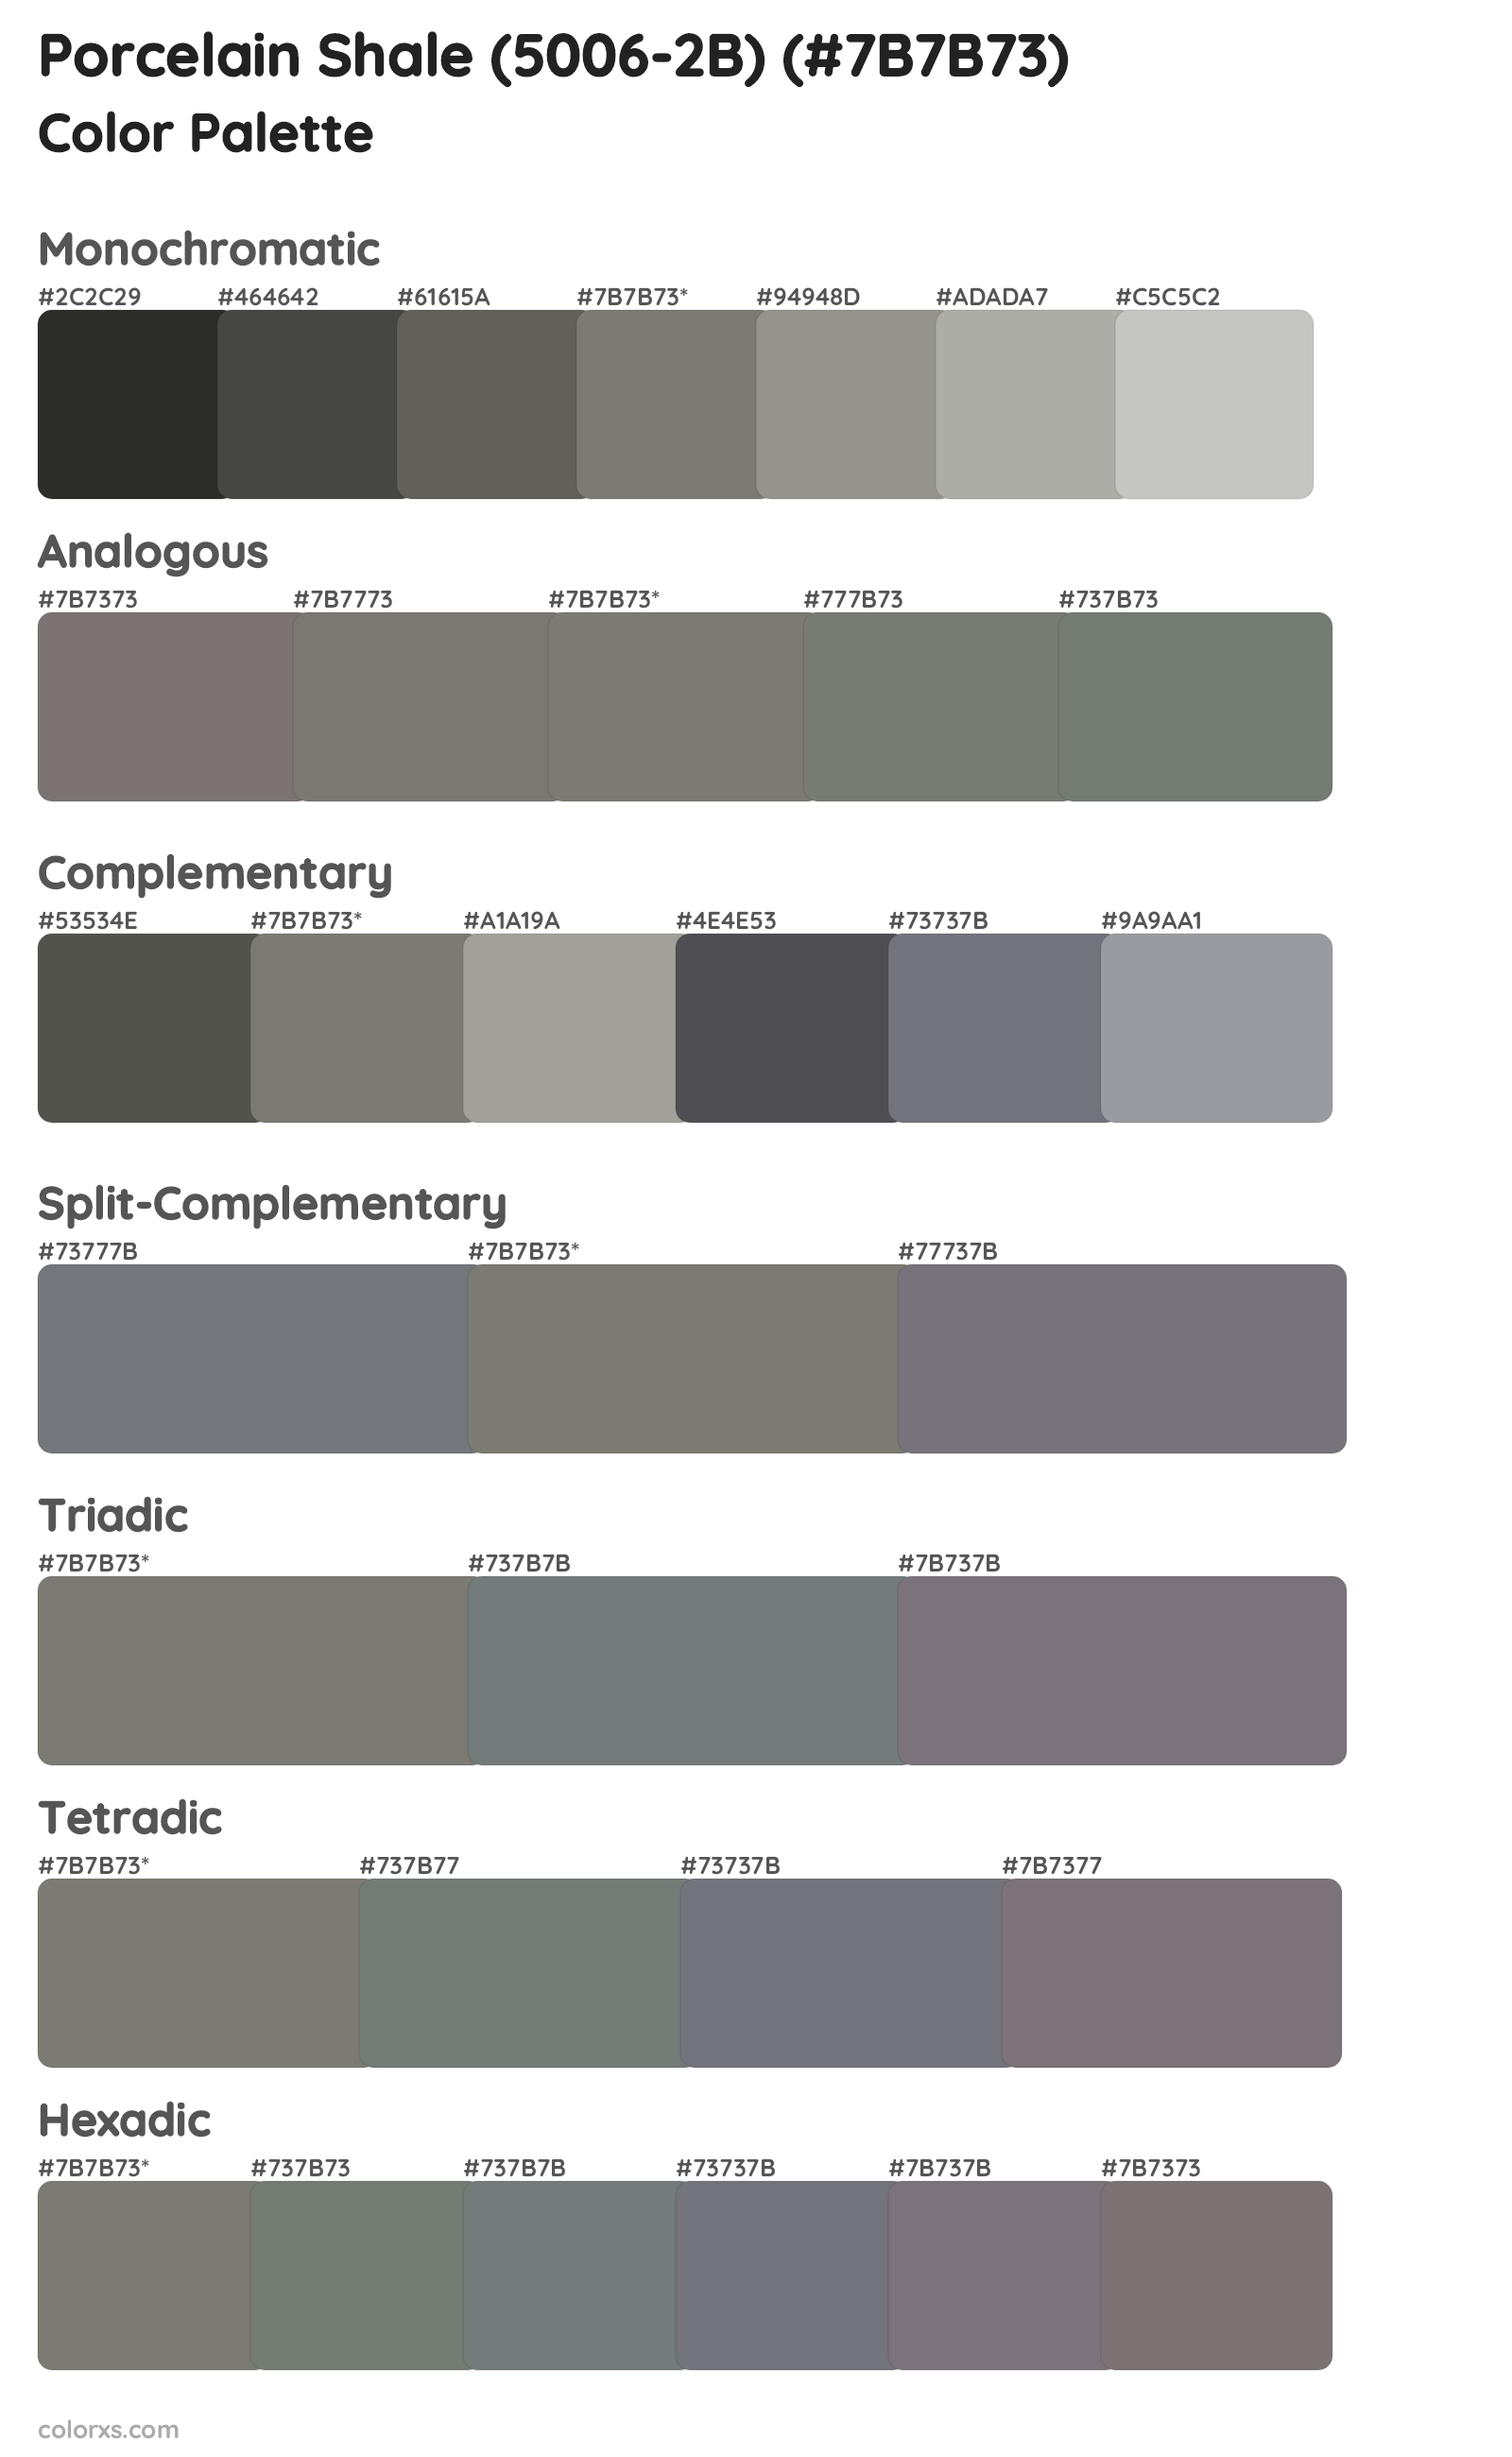 Porcelain Shale (5006-2B) Color Scheme Palettes